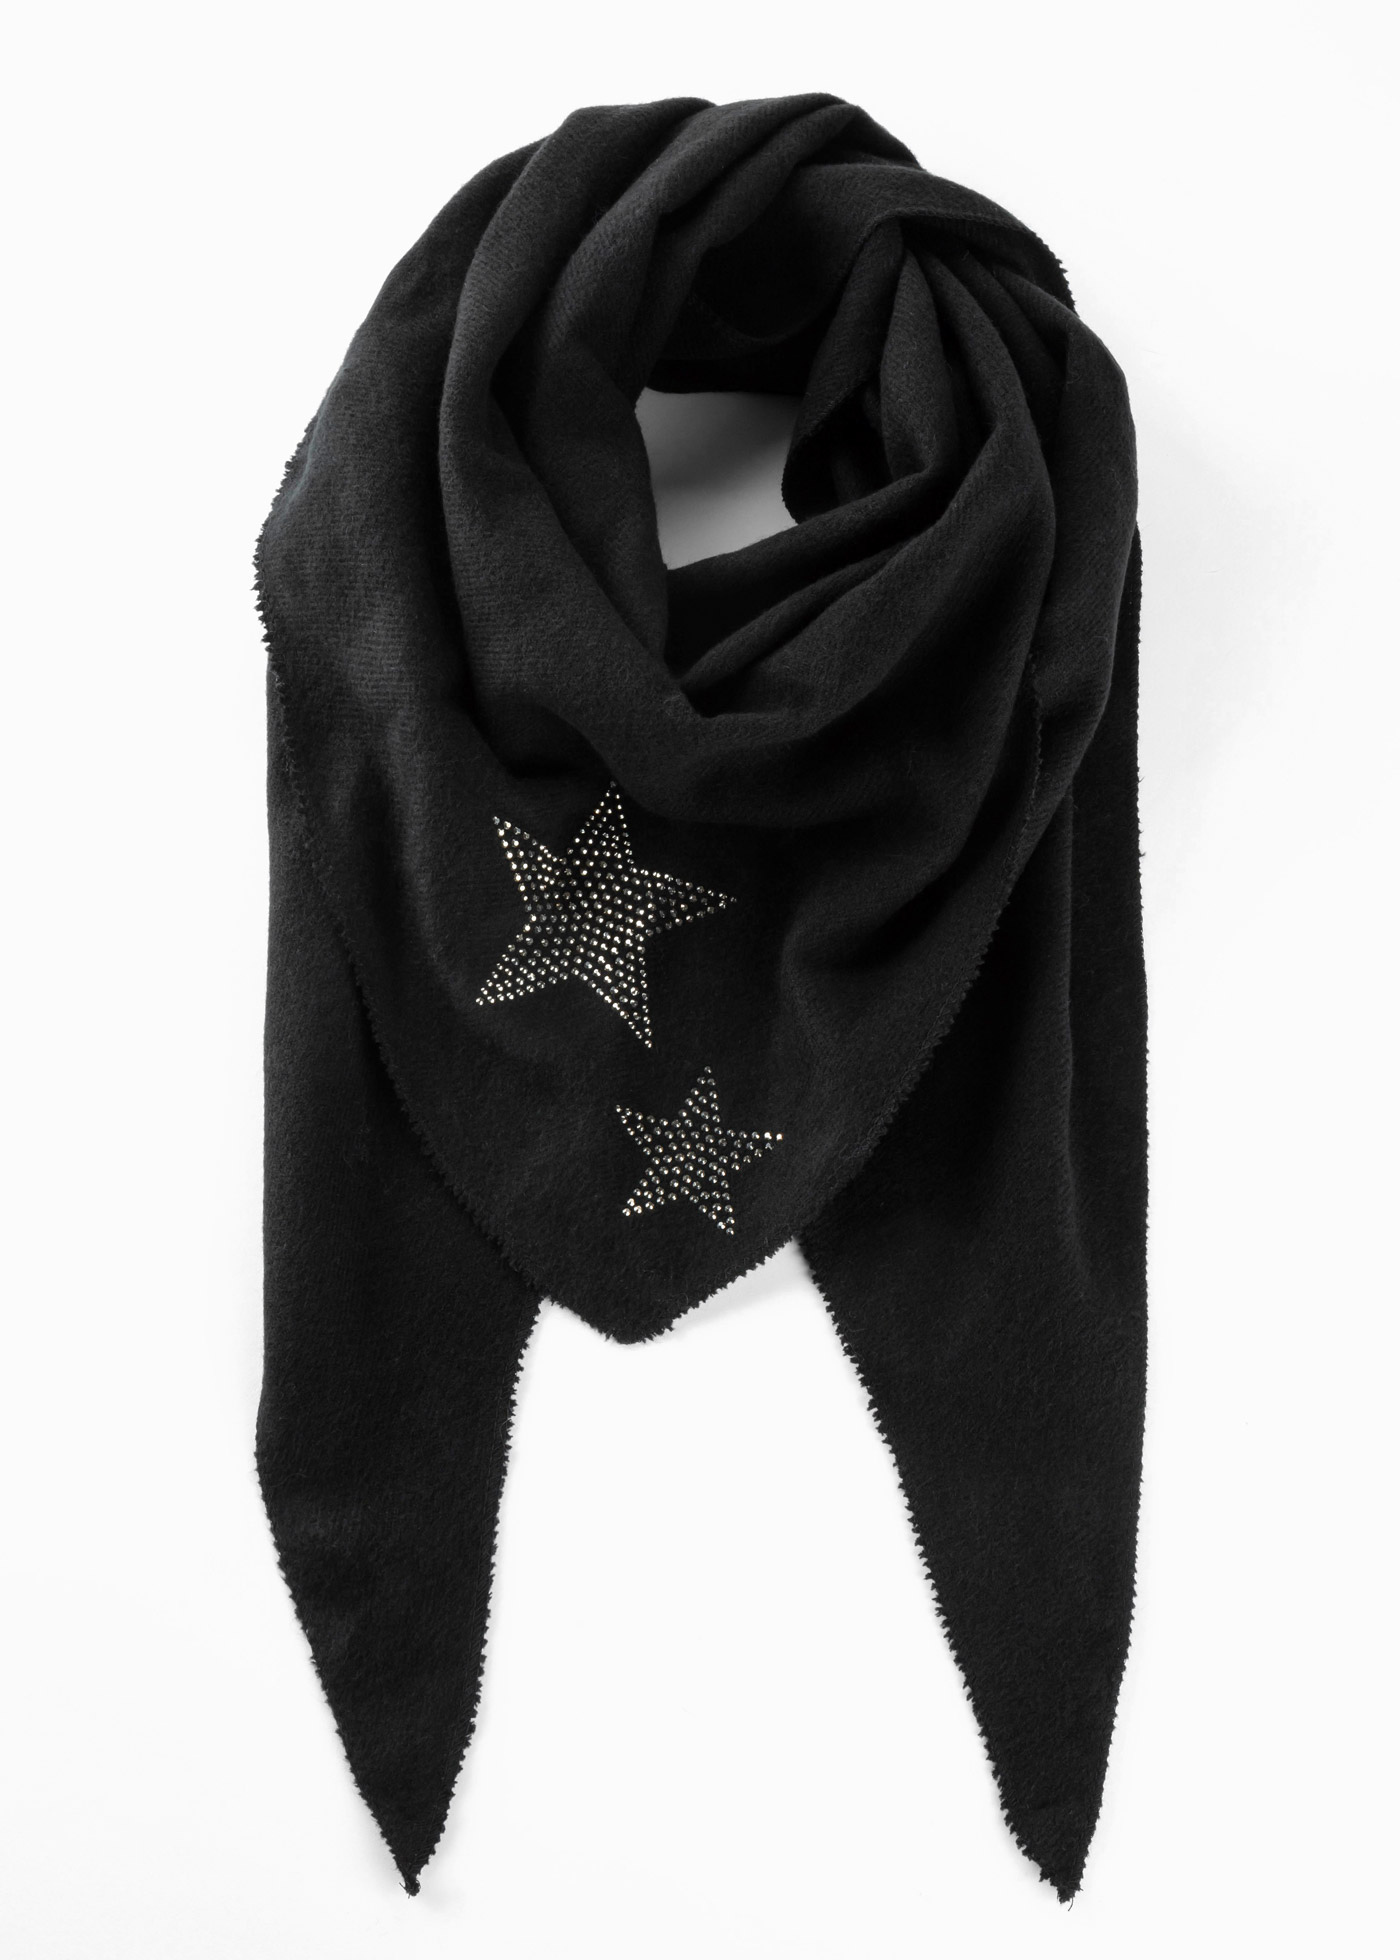 Winterliches Dreieckstuch mit Sternen (91189995) in schwarz/silberfarben